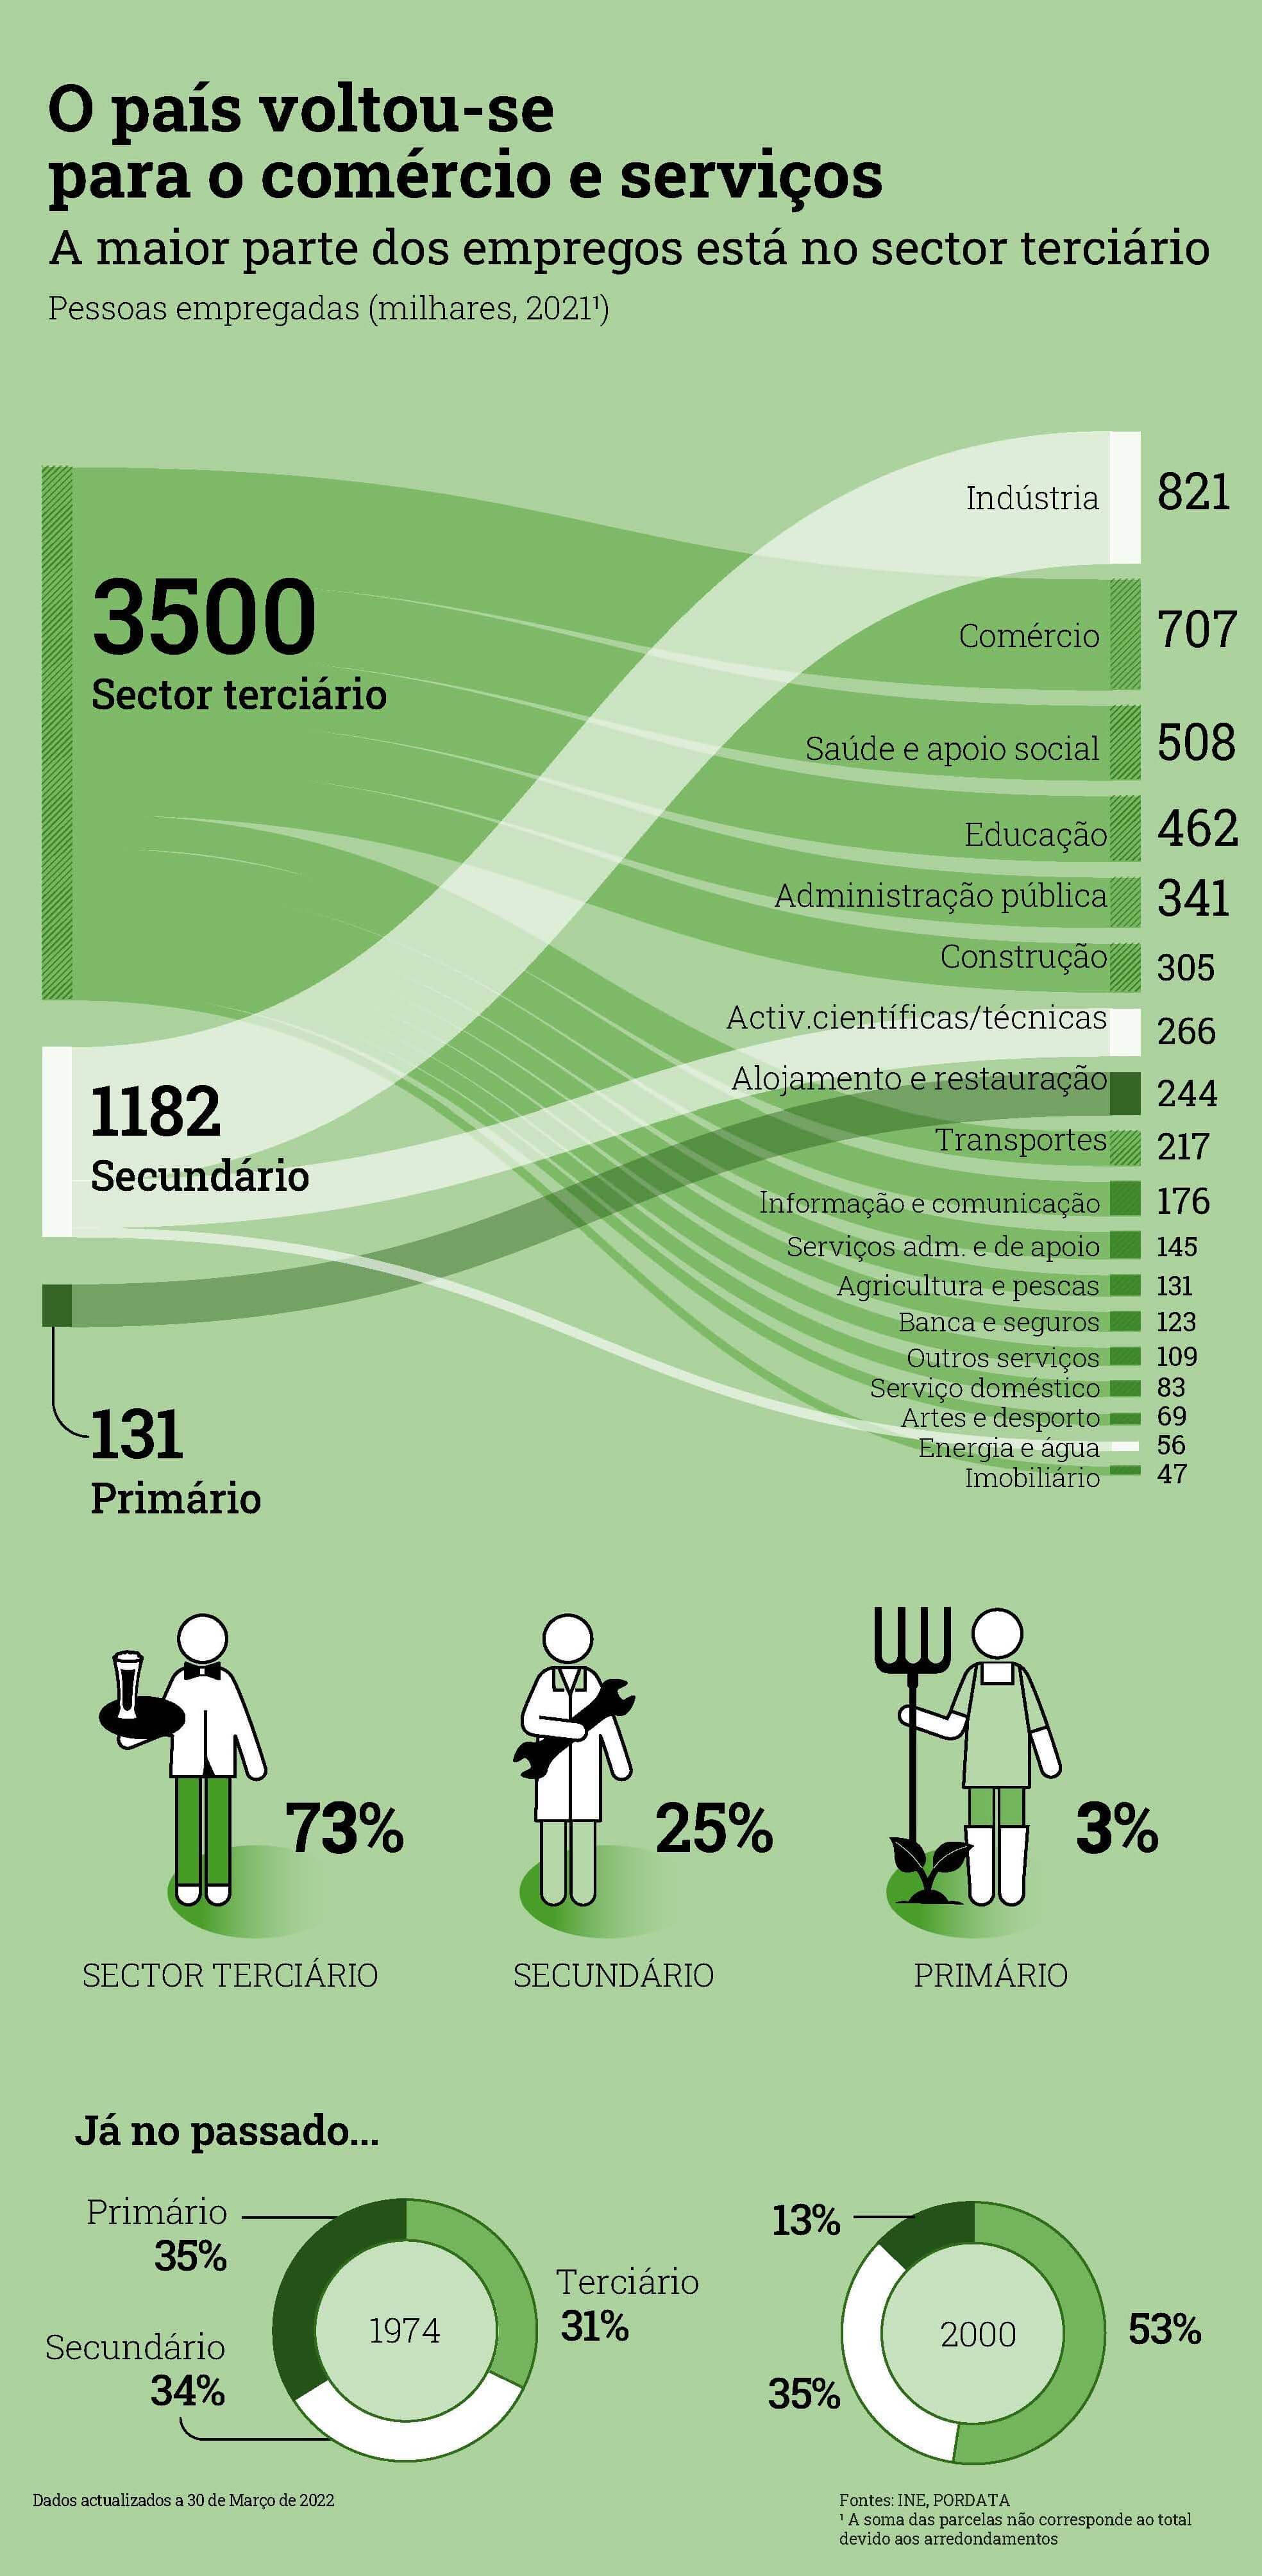 занятость населения по секторам в Португалии